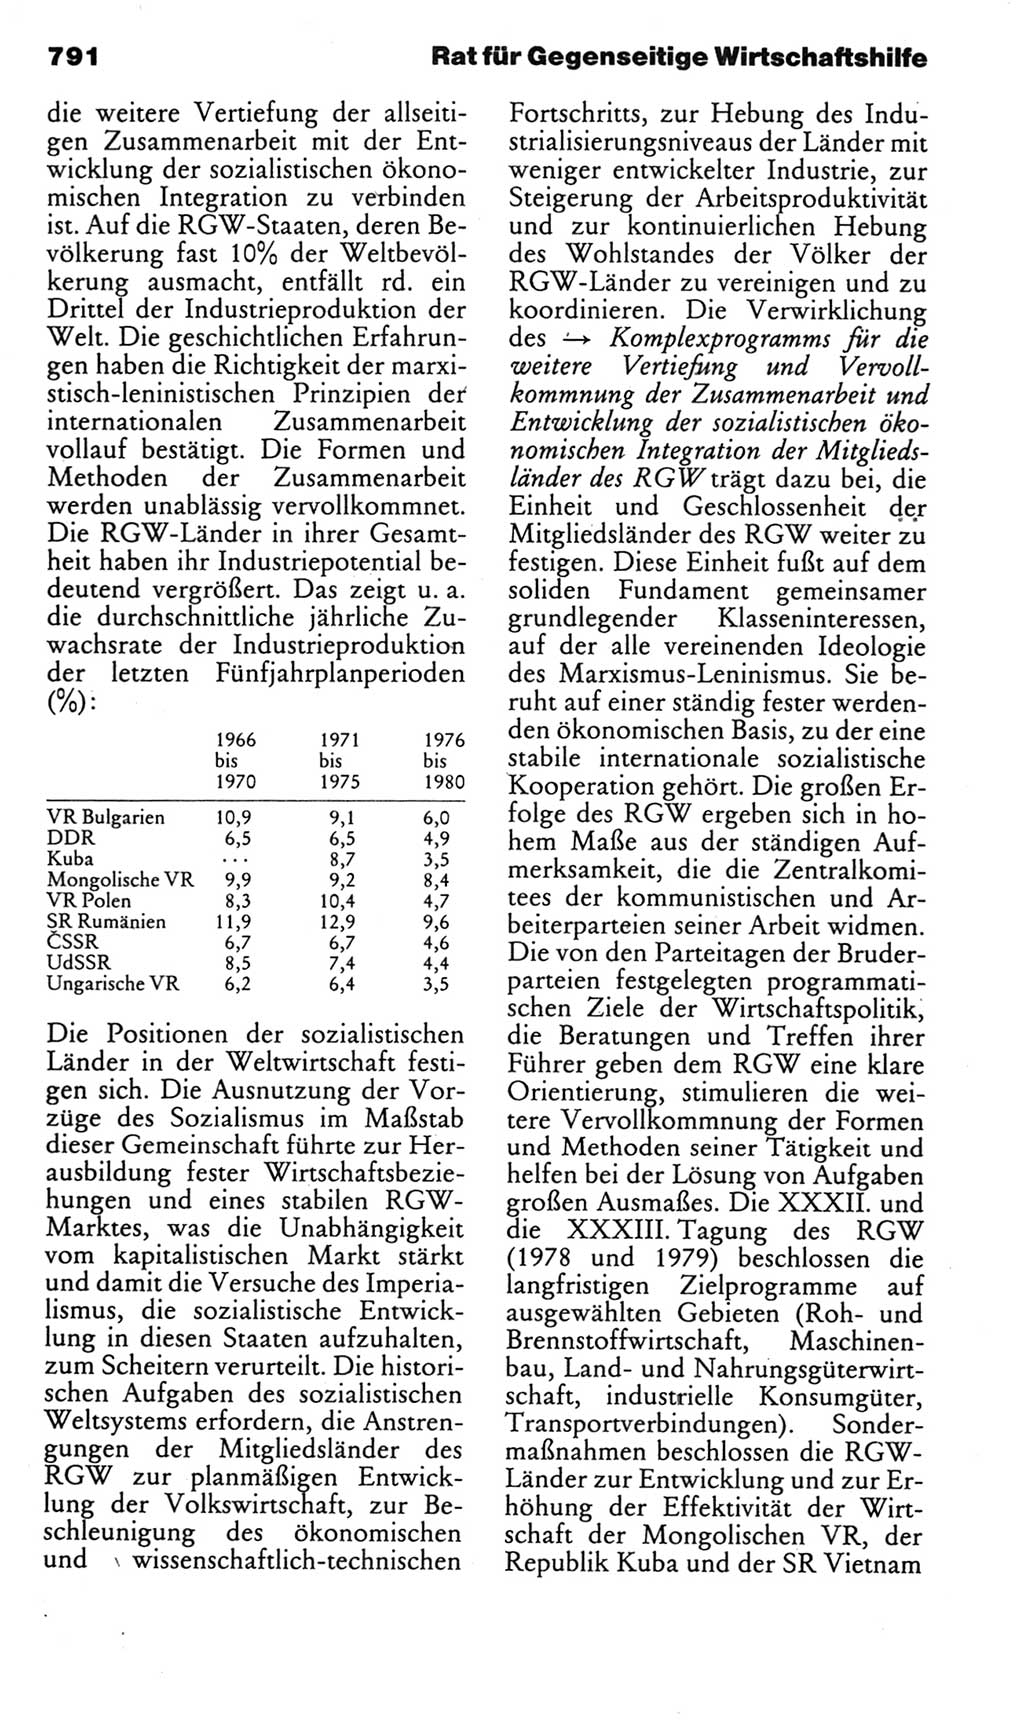 Kleines politisches Wörterbuch [Deutsche Demokratische Republik (DDR)] 1985, Seite 791 (Kl. pol. Wb. DDR 1985, S. 791)